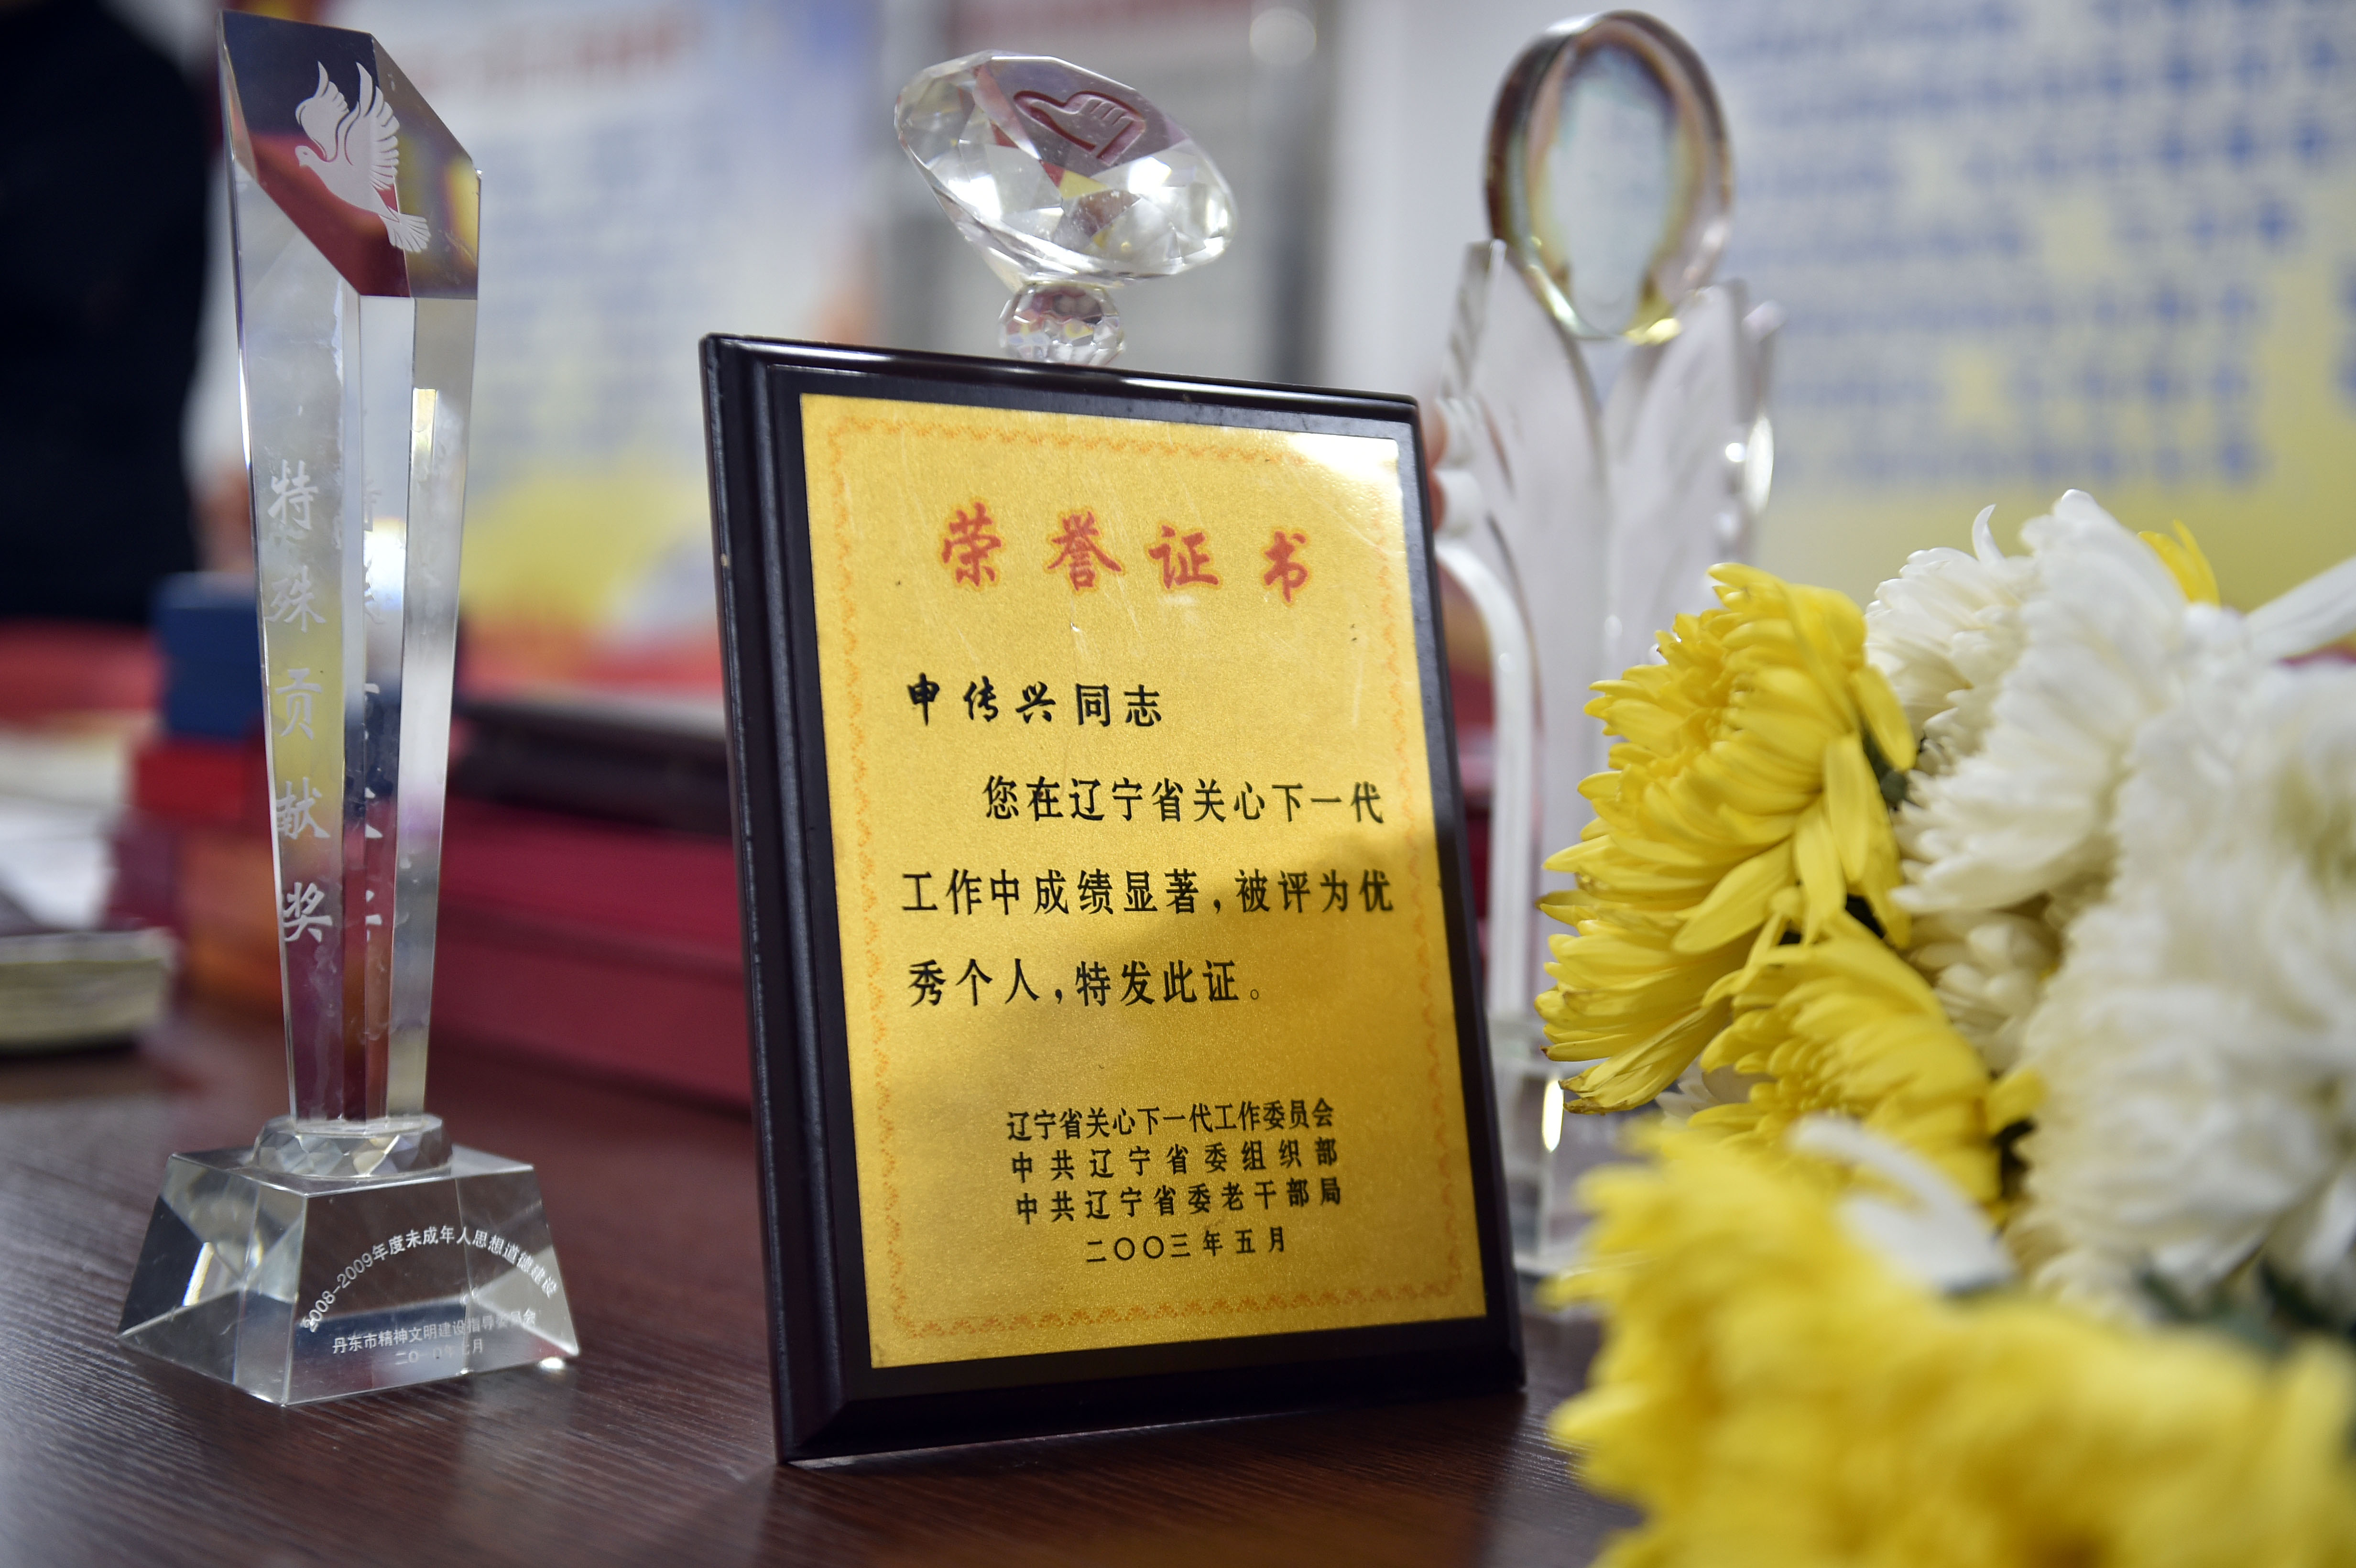 申传兴老人办公桌上摆放着的他生前获得的荣誉证书和奖杯(4月5日摄)